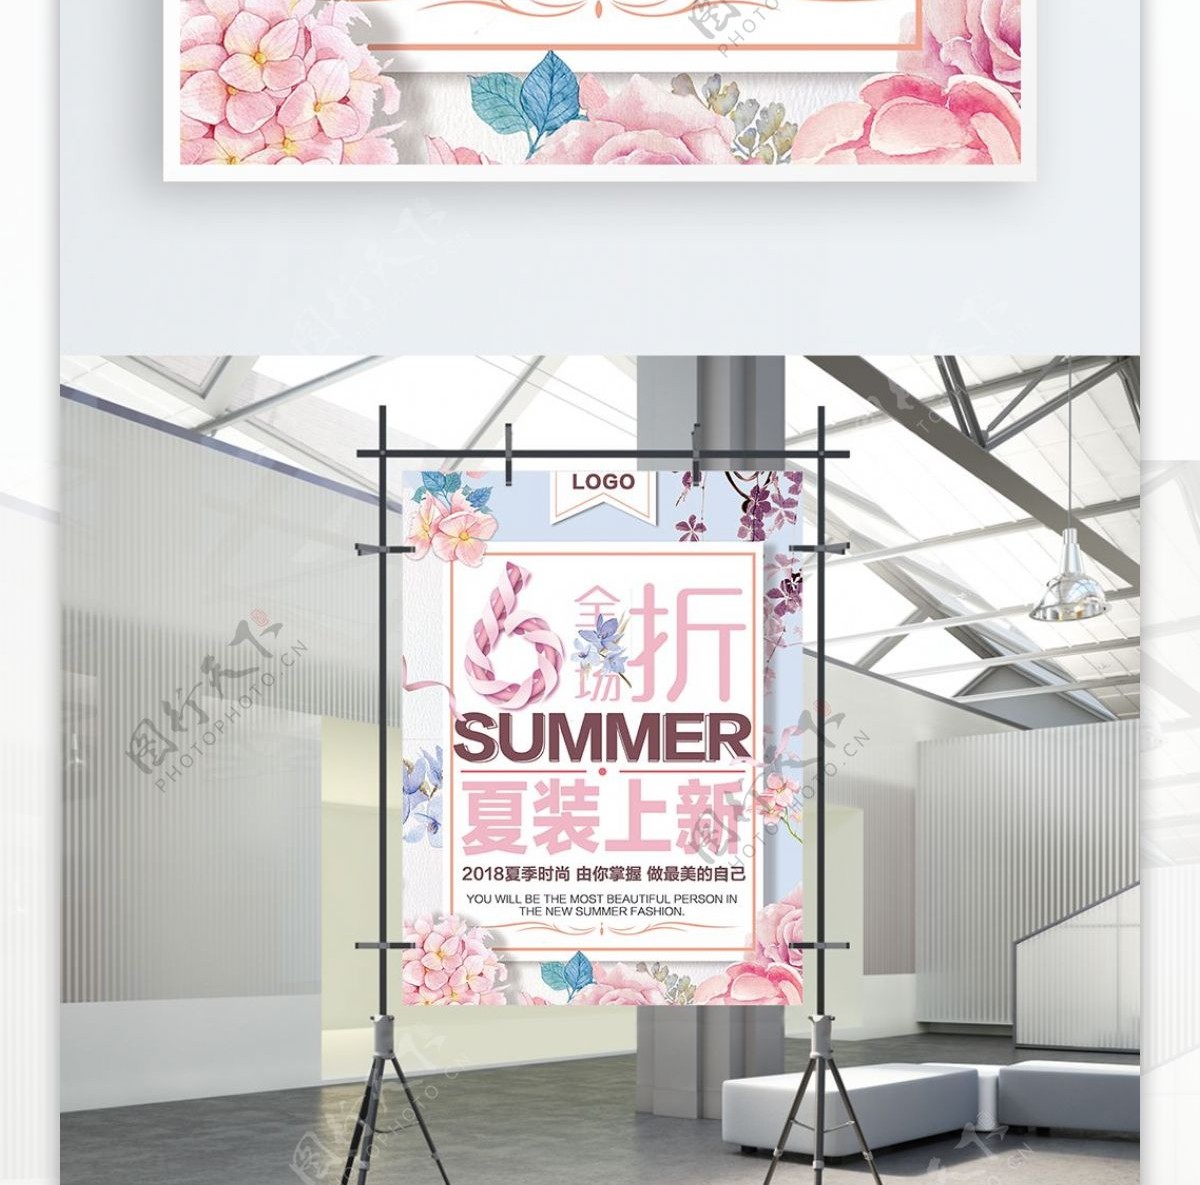 简约时尚唯美夏季促销女装商店促销海报